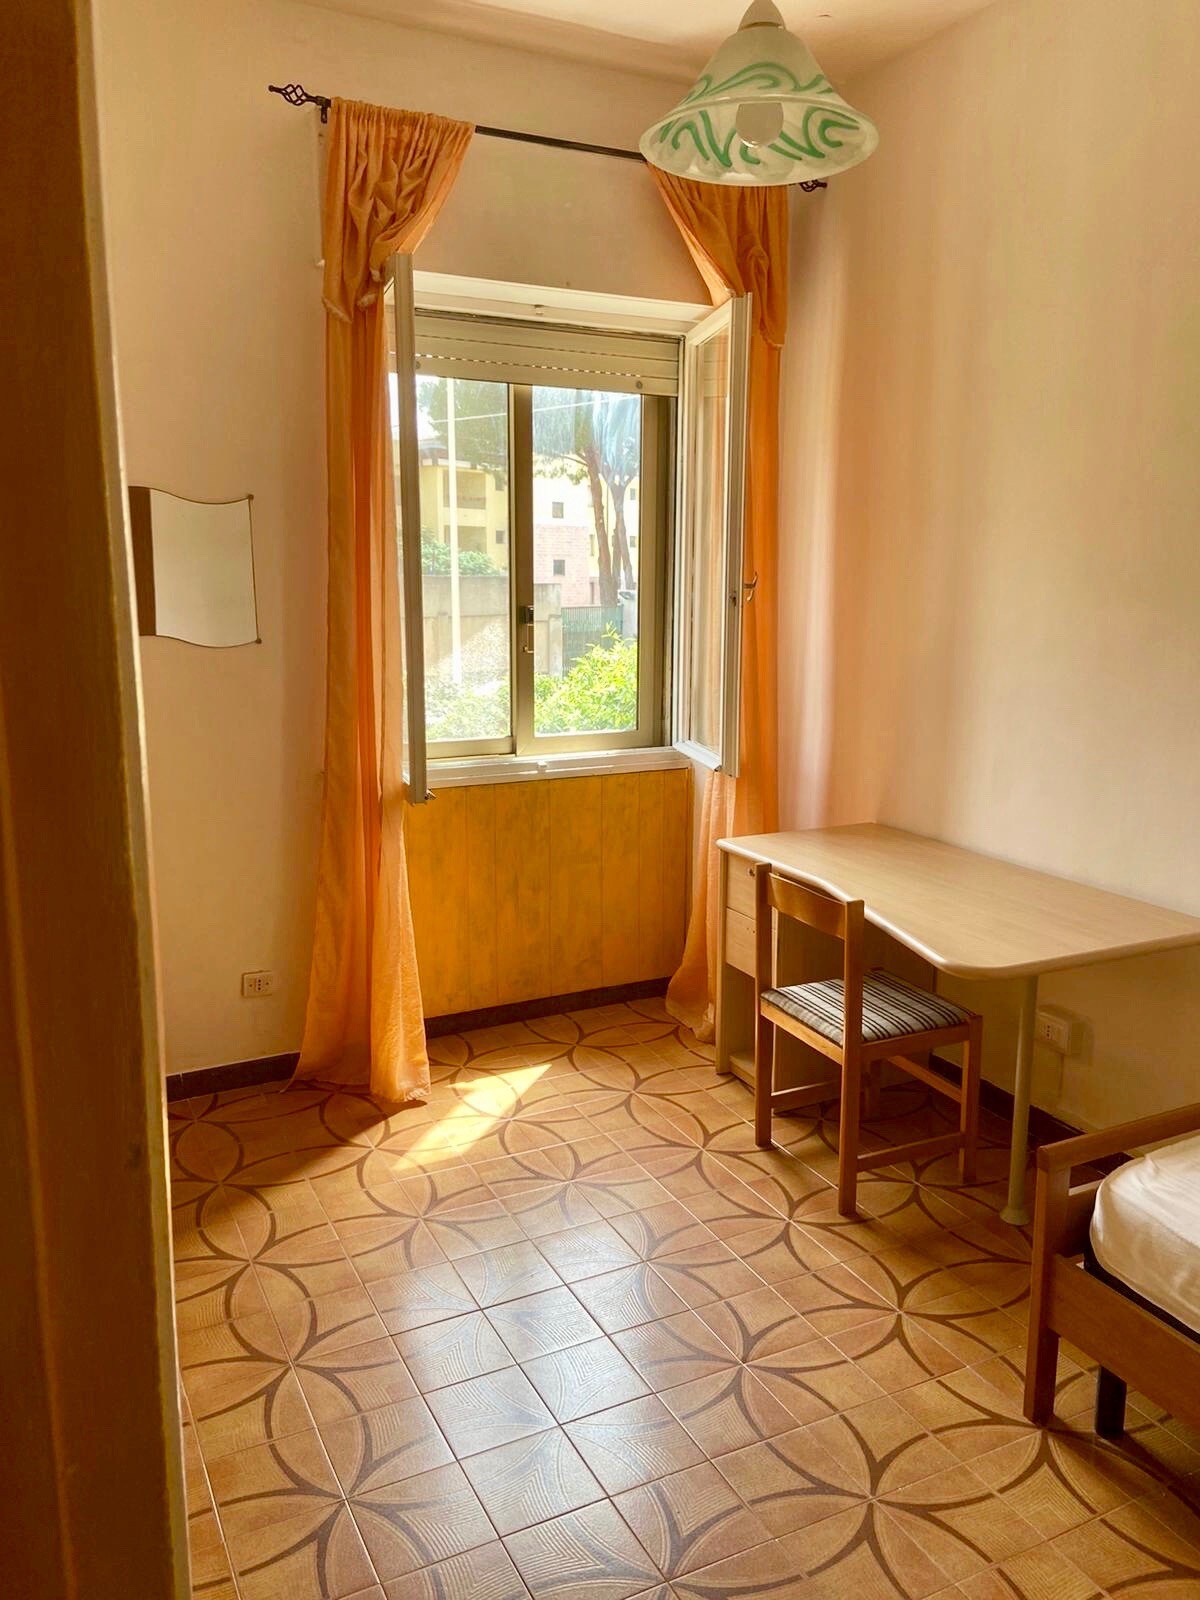 公寓内的独立房间： Cagliari